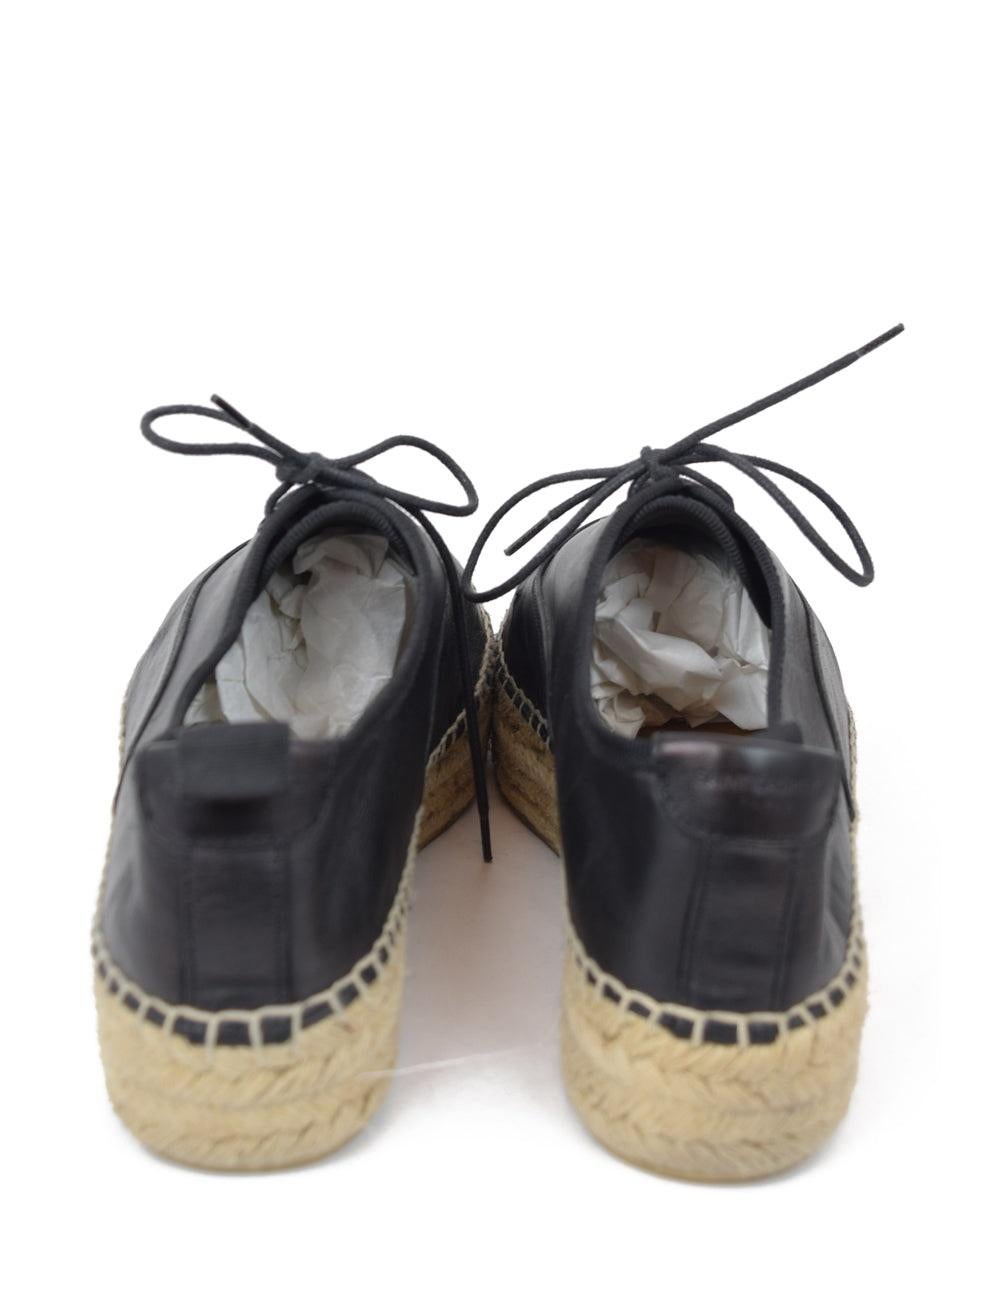 Women's Yves Saint Laurent EU 38 Black Leather Espadrilles Shoes